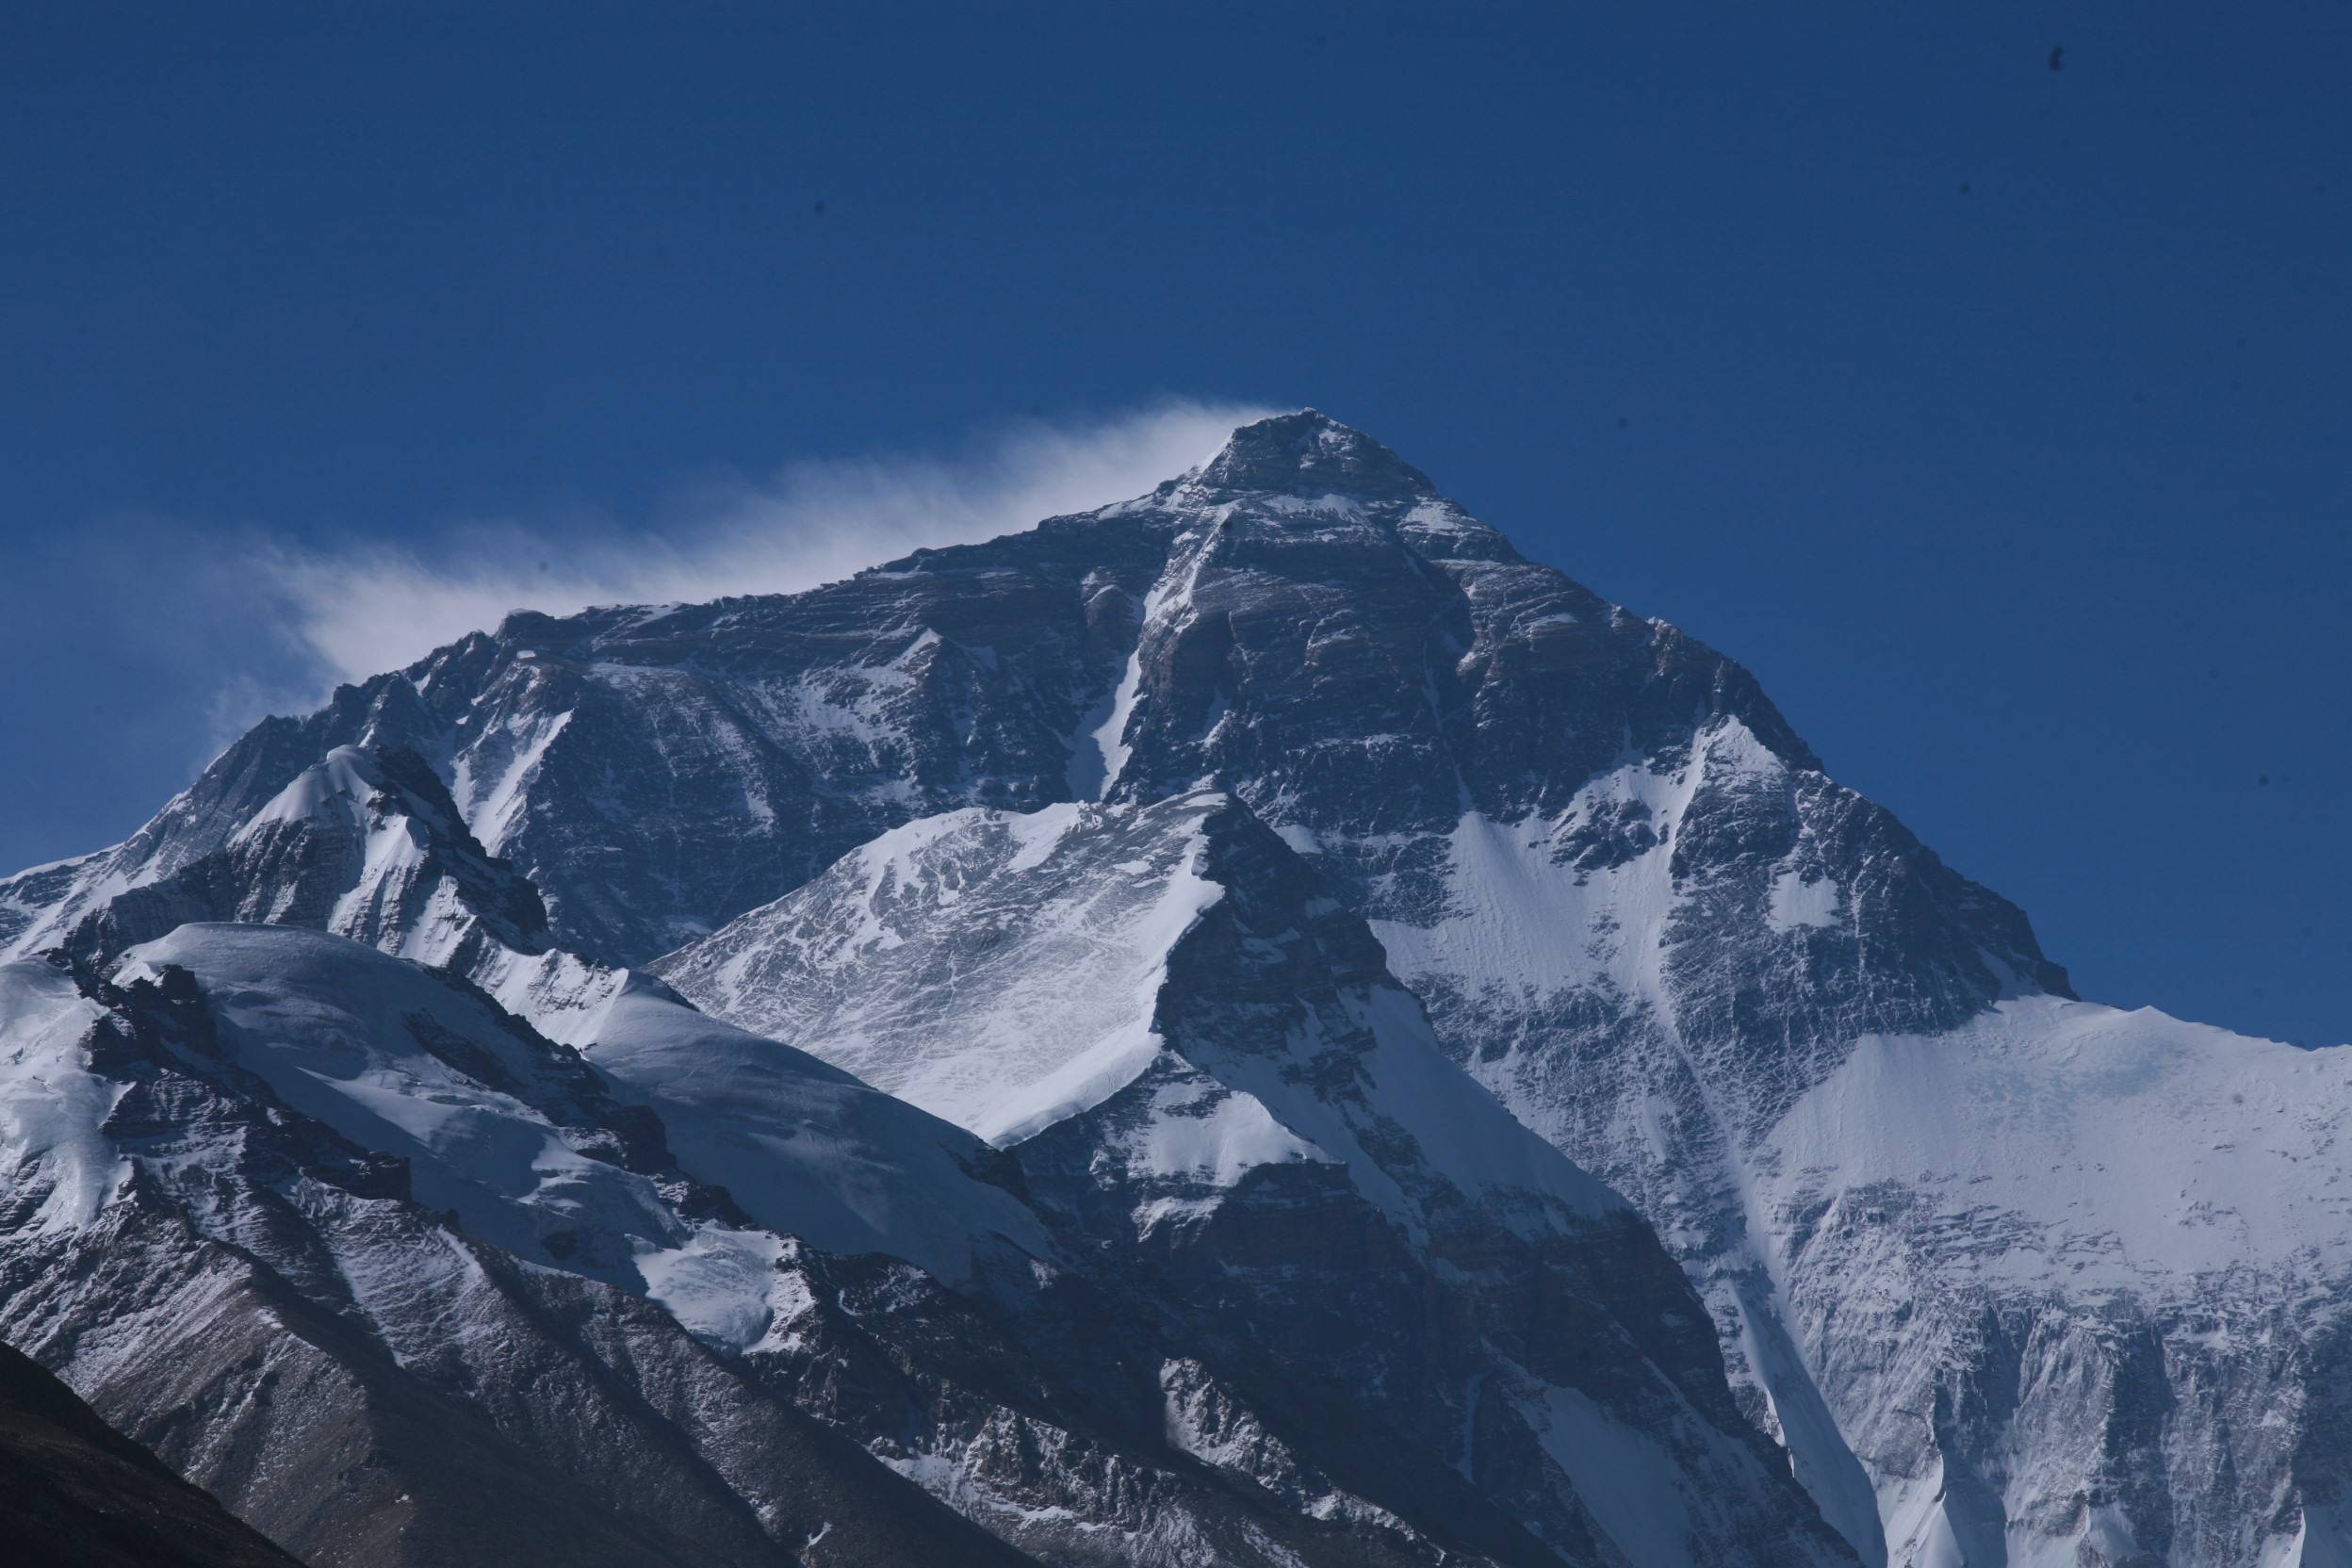 86米,号称为地球第三极,登上珠穆朗玛峰山顶需要巨大的勇气,花费巨大